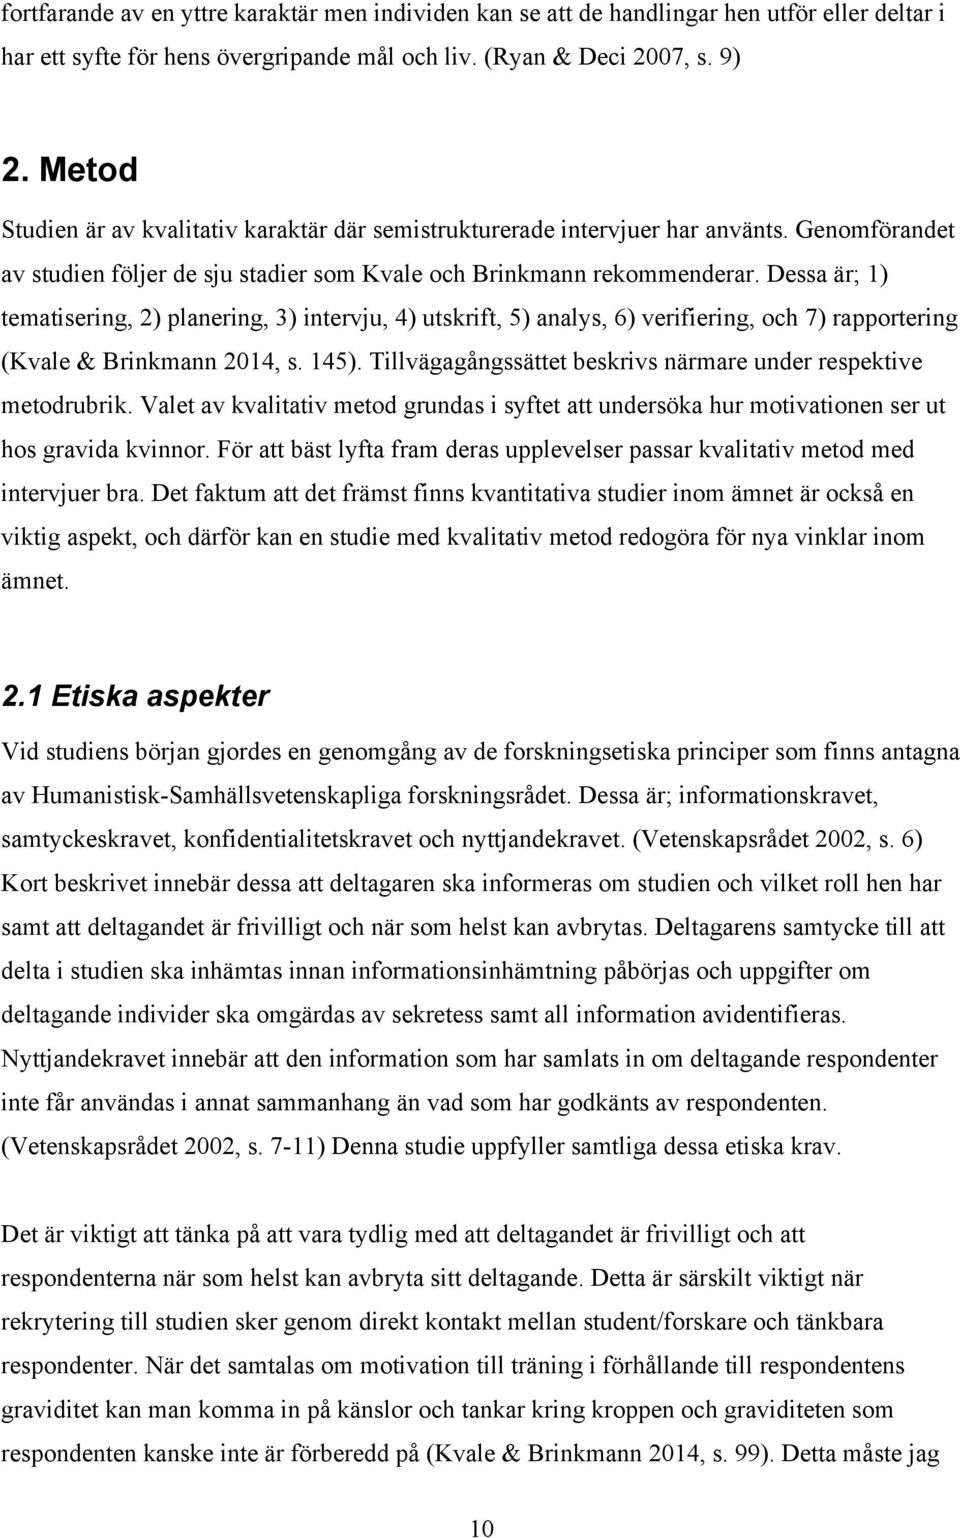 Dessa är; 1) tematisering, 2) planering, 3) intervju, 4) utskrift, 5) analys, 6) verifiering, och 7) rapportering (Kvale & Brinkmann 2014, s. 145).